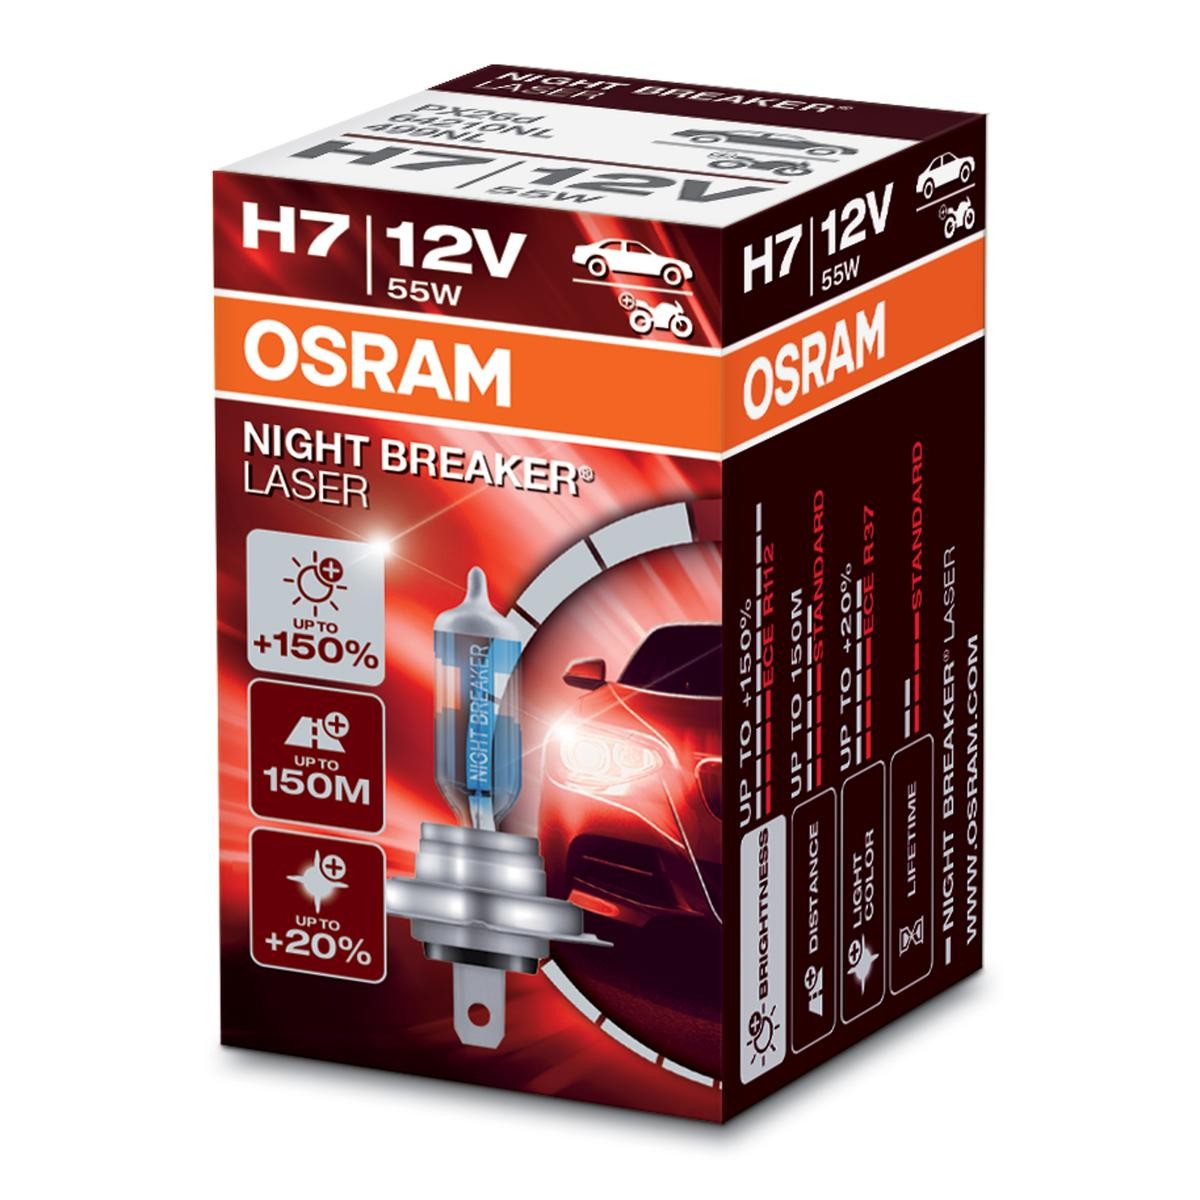 H7 OSRAM NIGHT BREAKER LASER next Generation H7 12V 55W PX26d, 4050K, Halogen Main beam bulb 64210NL buy